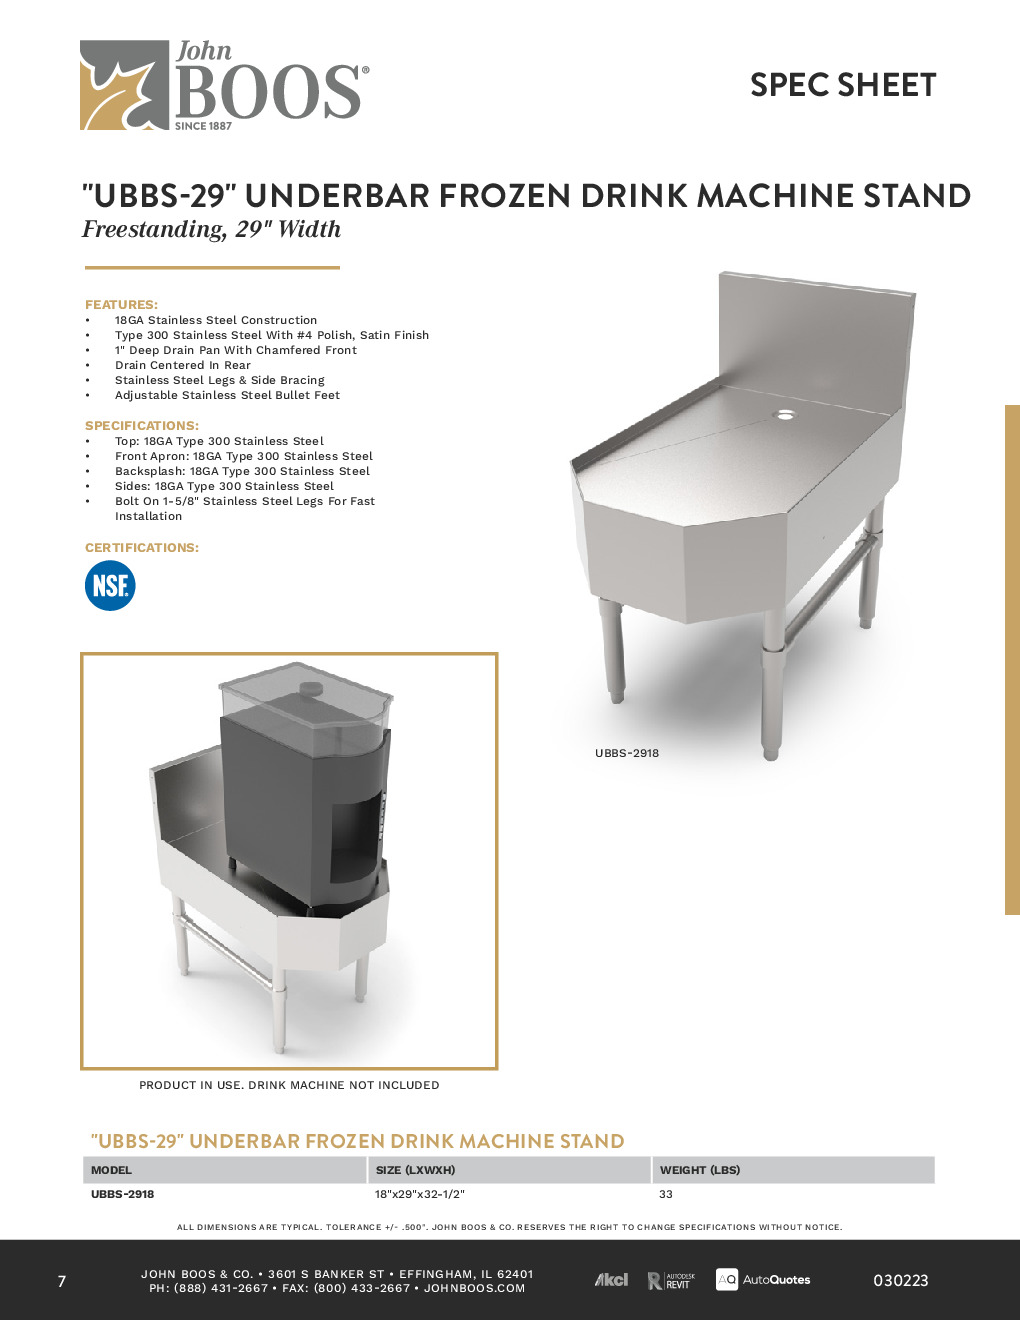 John Boos UBBS-2918-X Underbar Frozen Drink Machine Stand